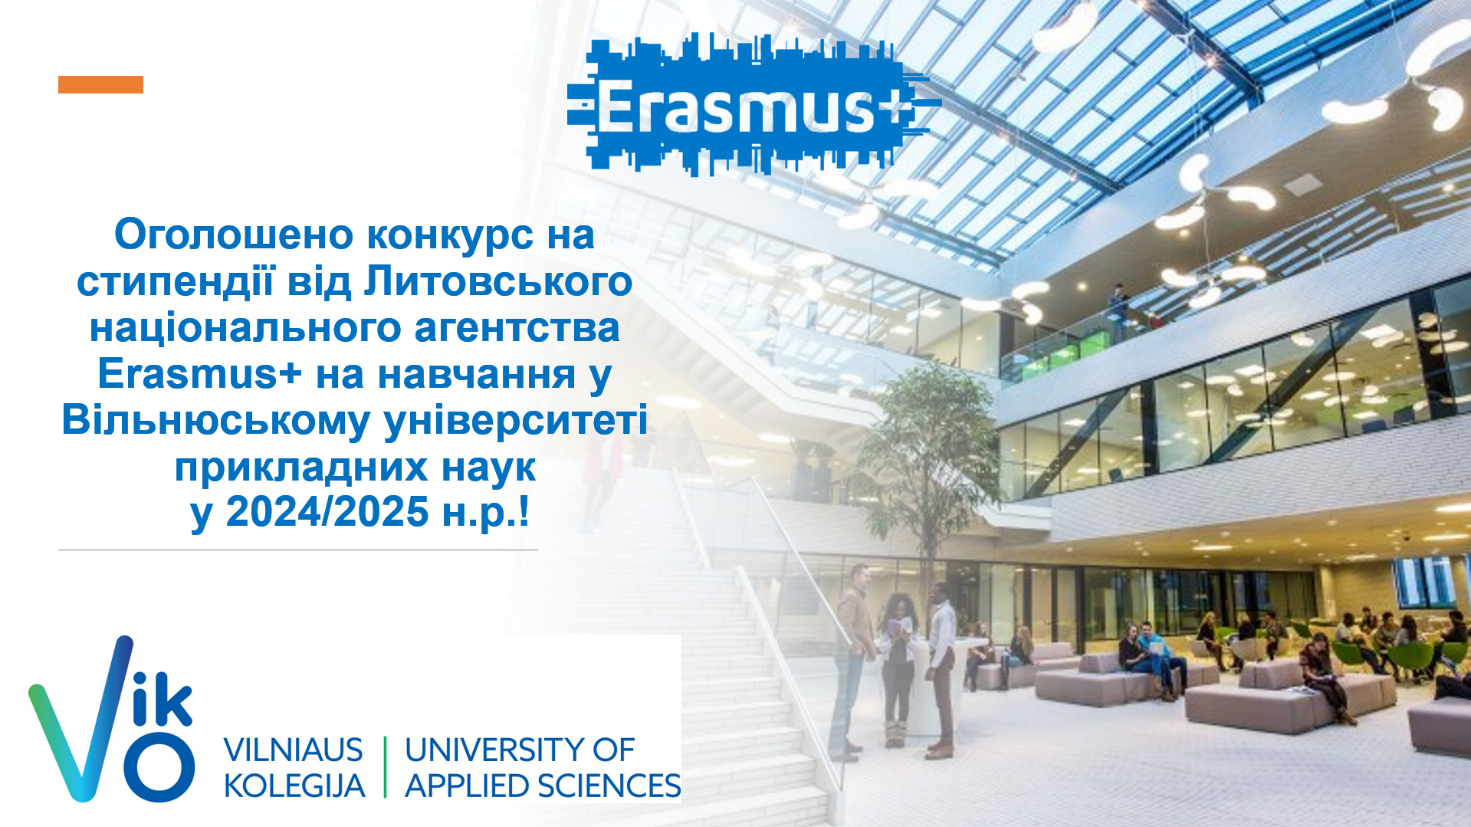 Вільнюський університет прикладних наук запрошує студентів політехніки подавати заявки на стипендії від Литовського національного агентства Erasmus+